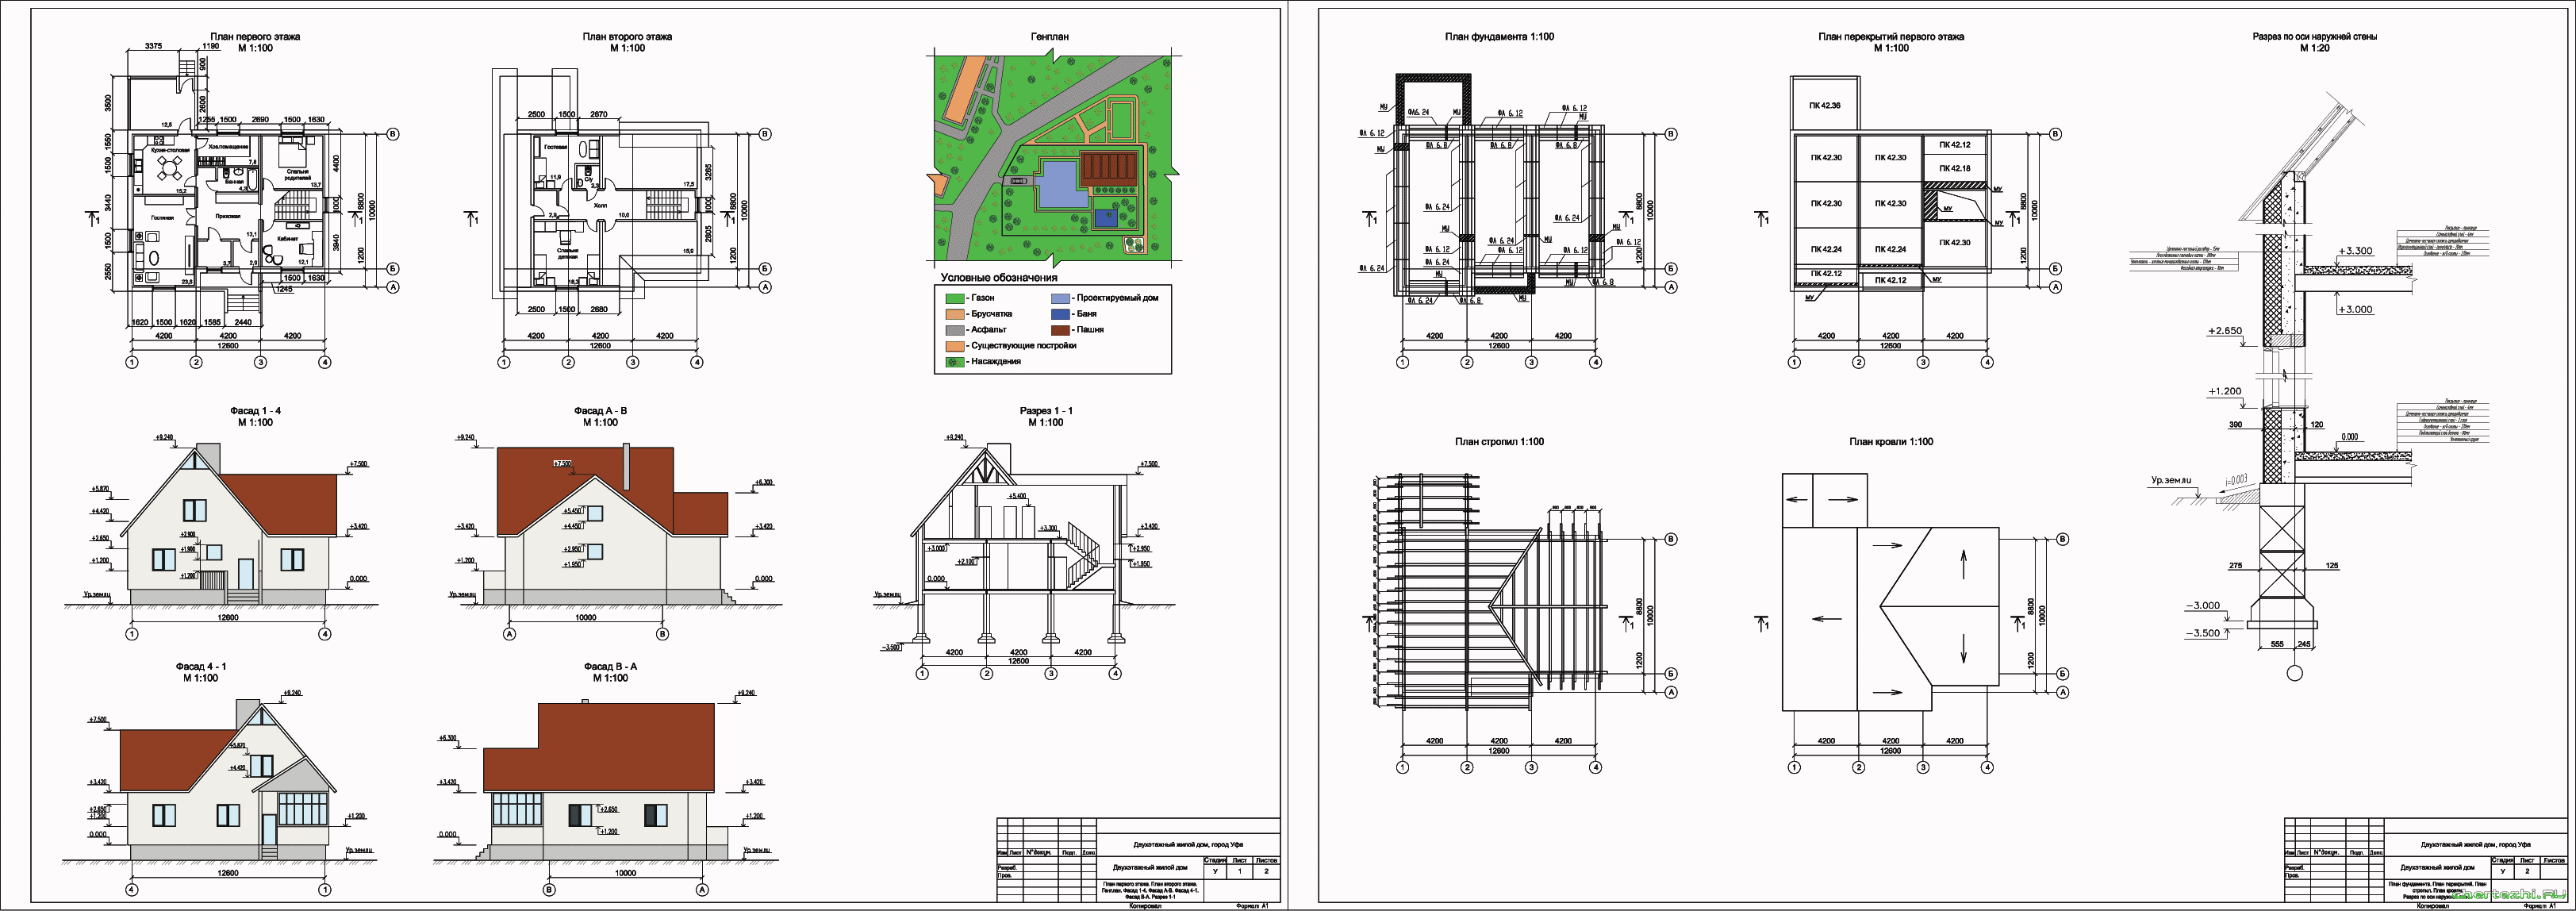 Курсовой проект - 2-х этажный жилой дом 12,6 х 10,0 м в г. Уфа